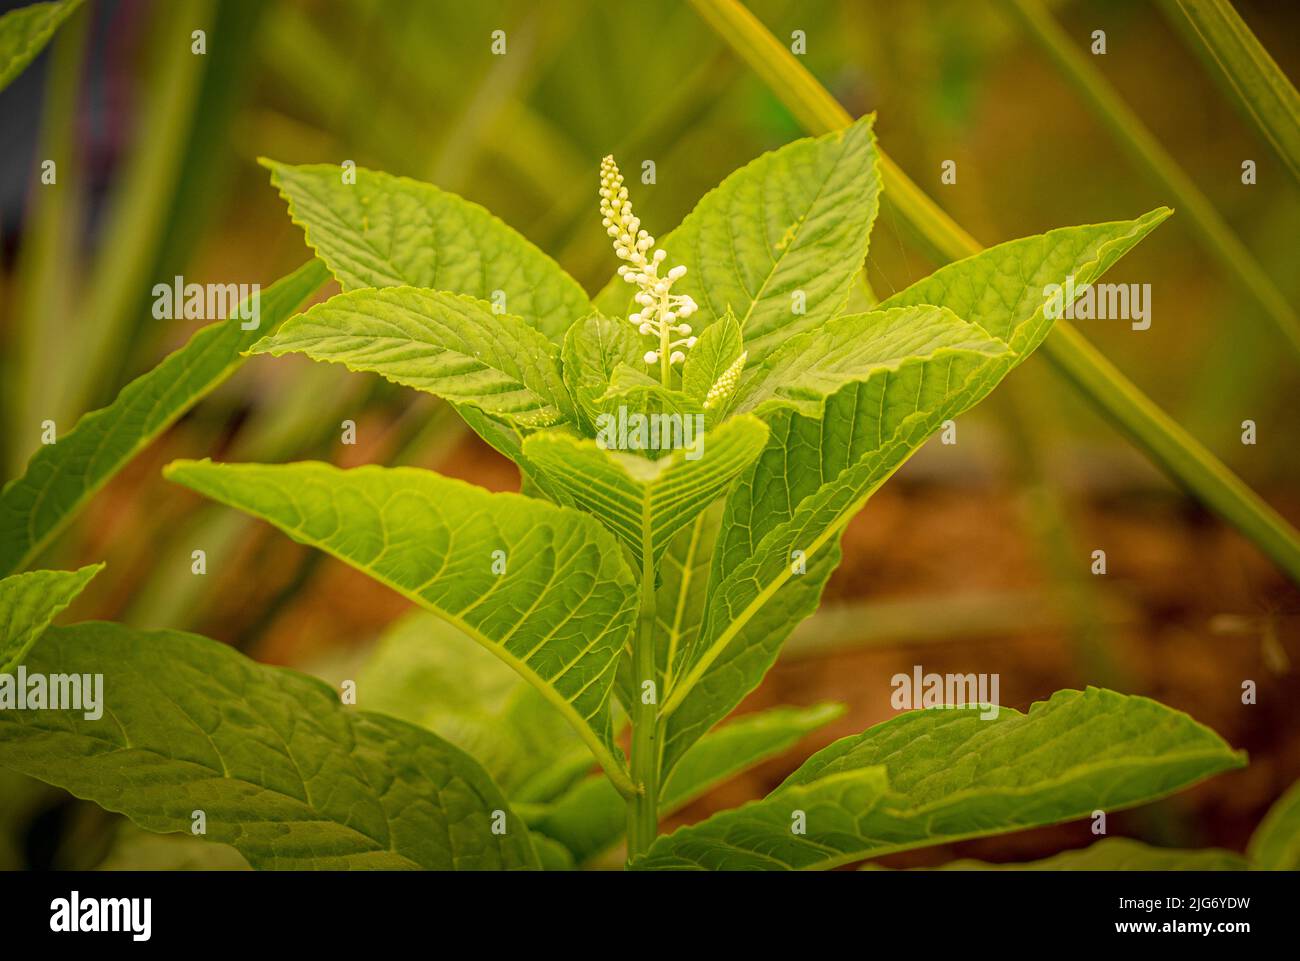 Fiori bianchi di Phytolacca americana comunemente noto come pokeweed americano. Altamente velenoso per tutti i mammiferi. Foto Stock